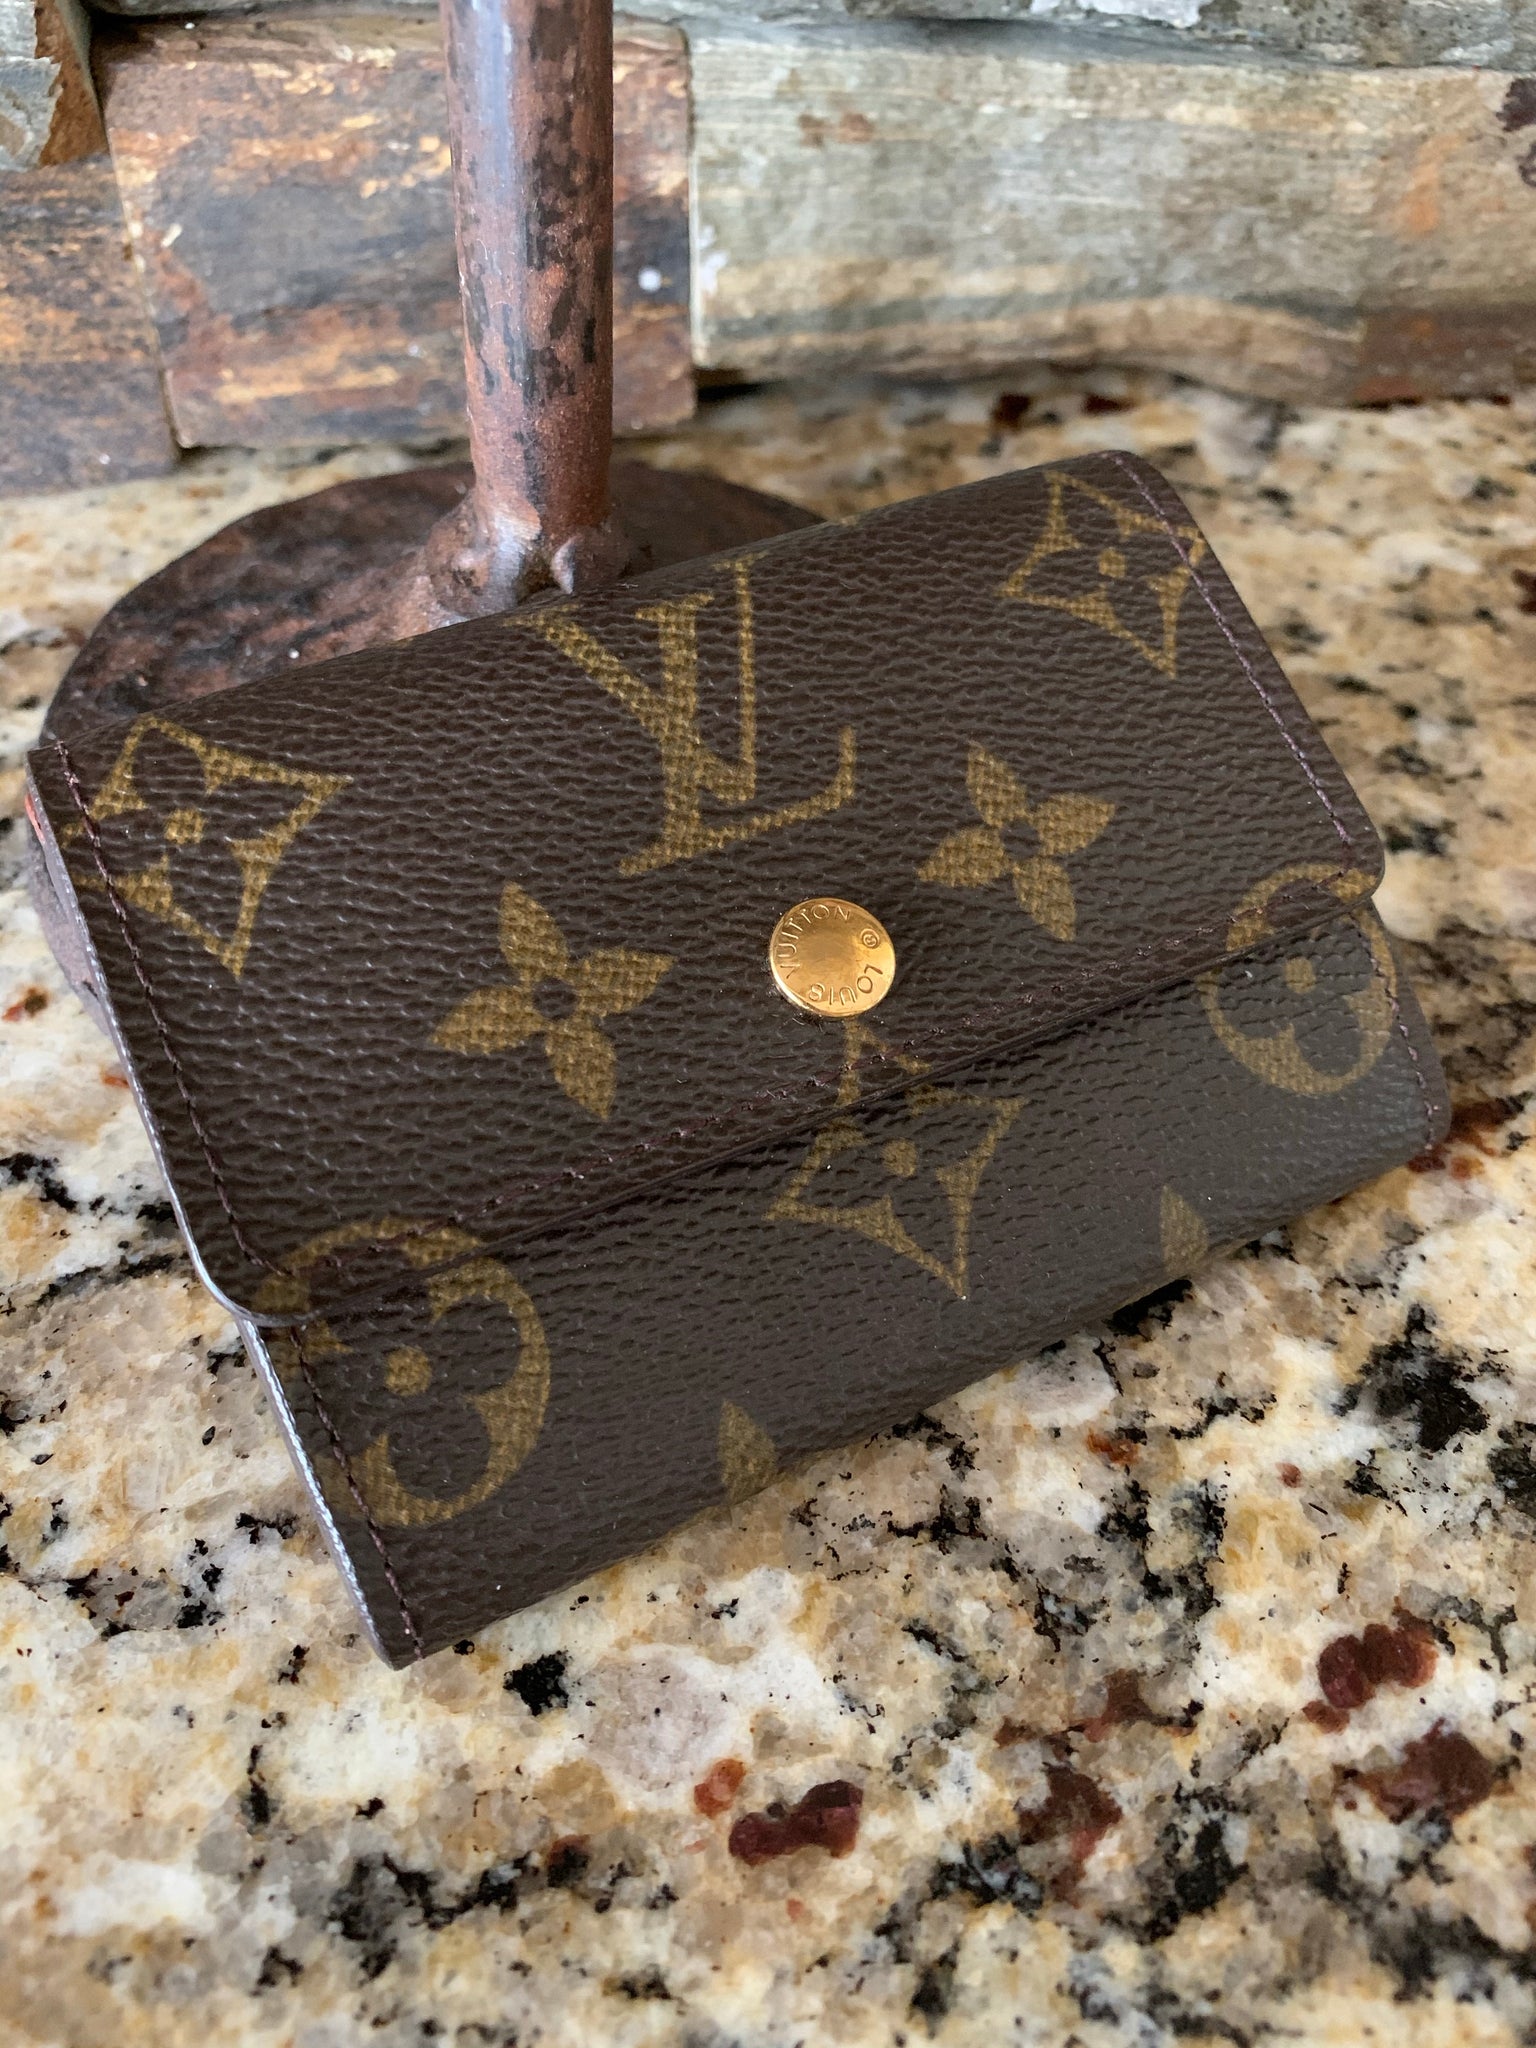 Louis Vuitton Monogram Elise Compact Wallet